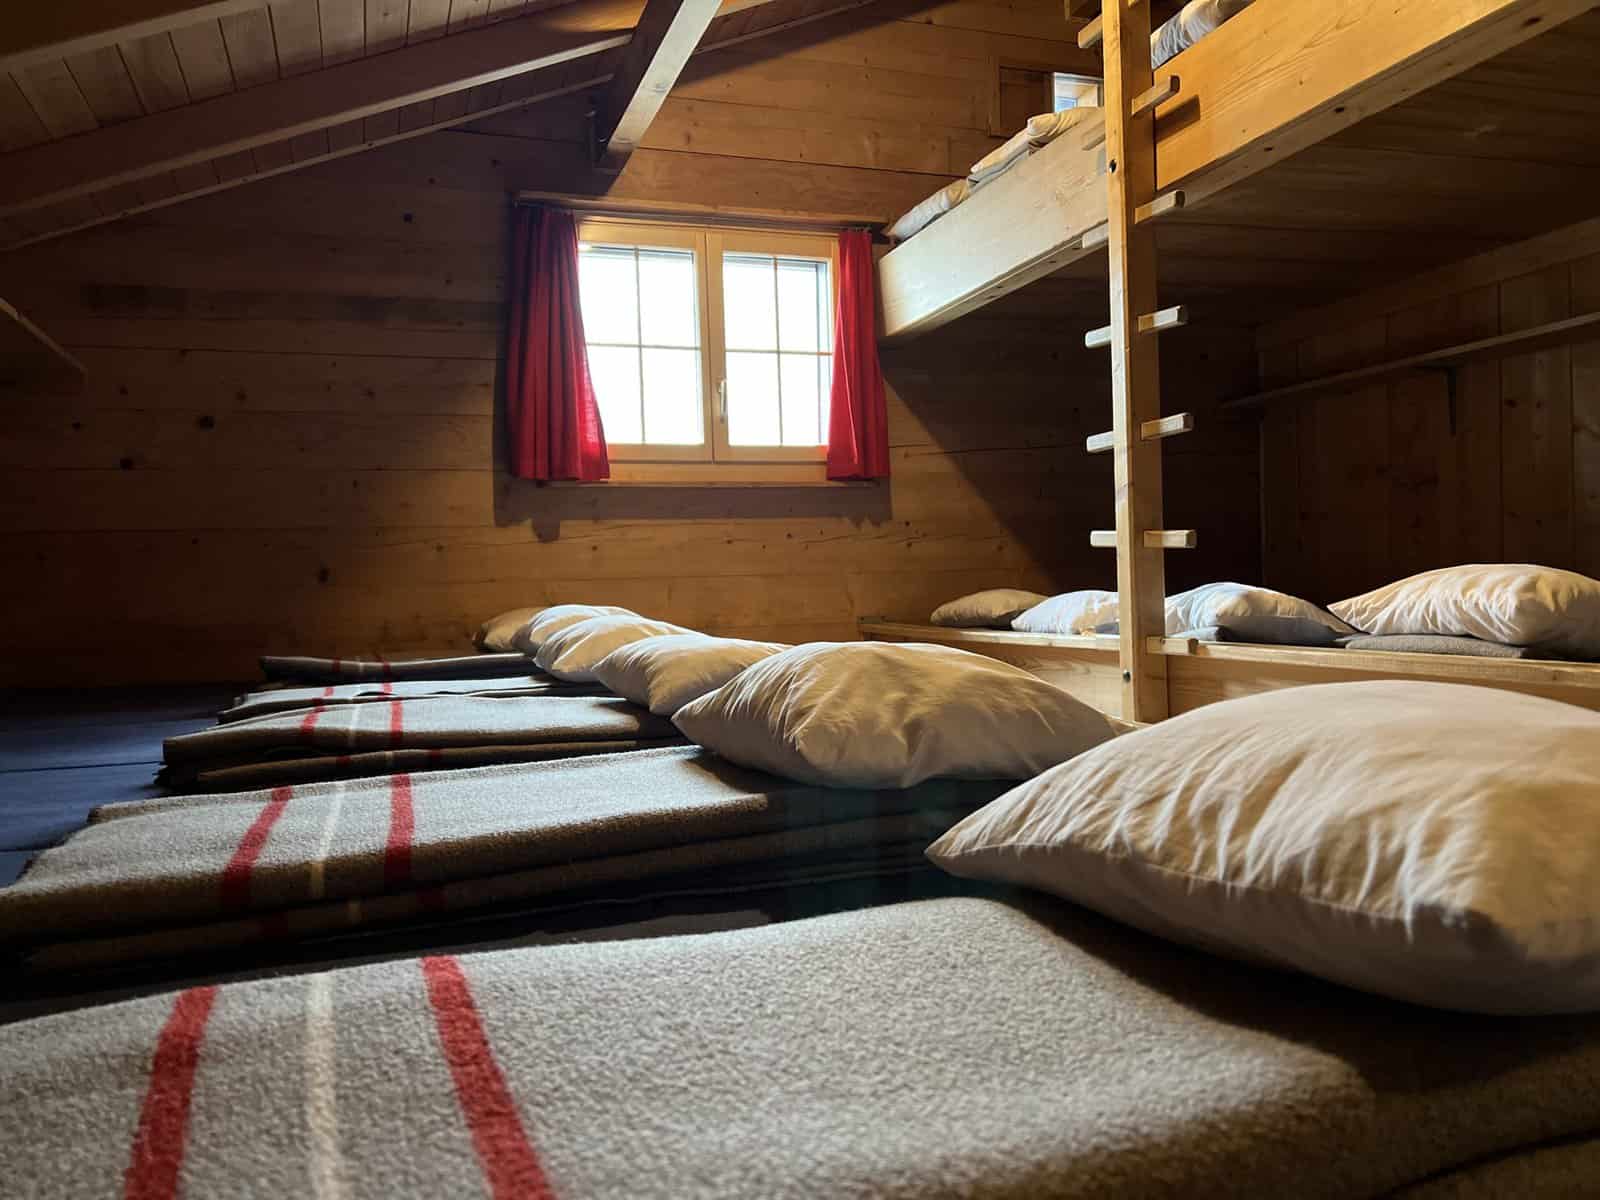 Schlafzimmer mit 17 Betten, Armeedecken und Kissen.